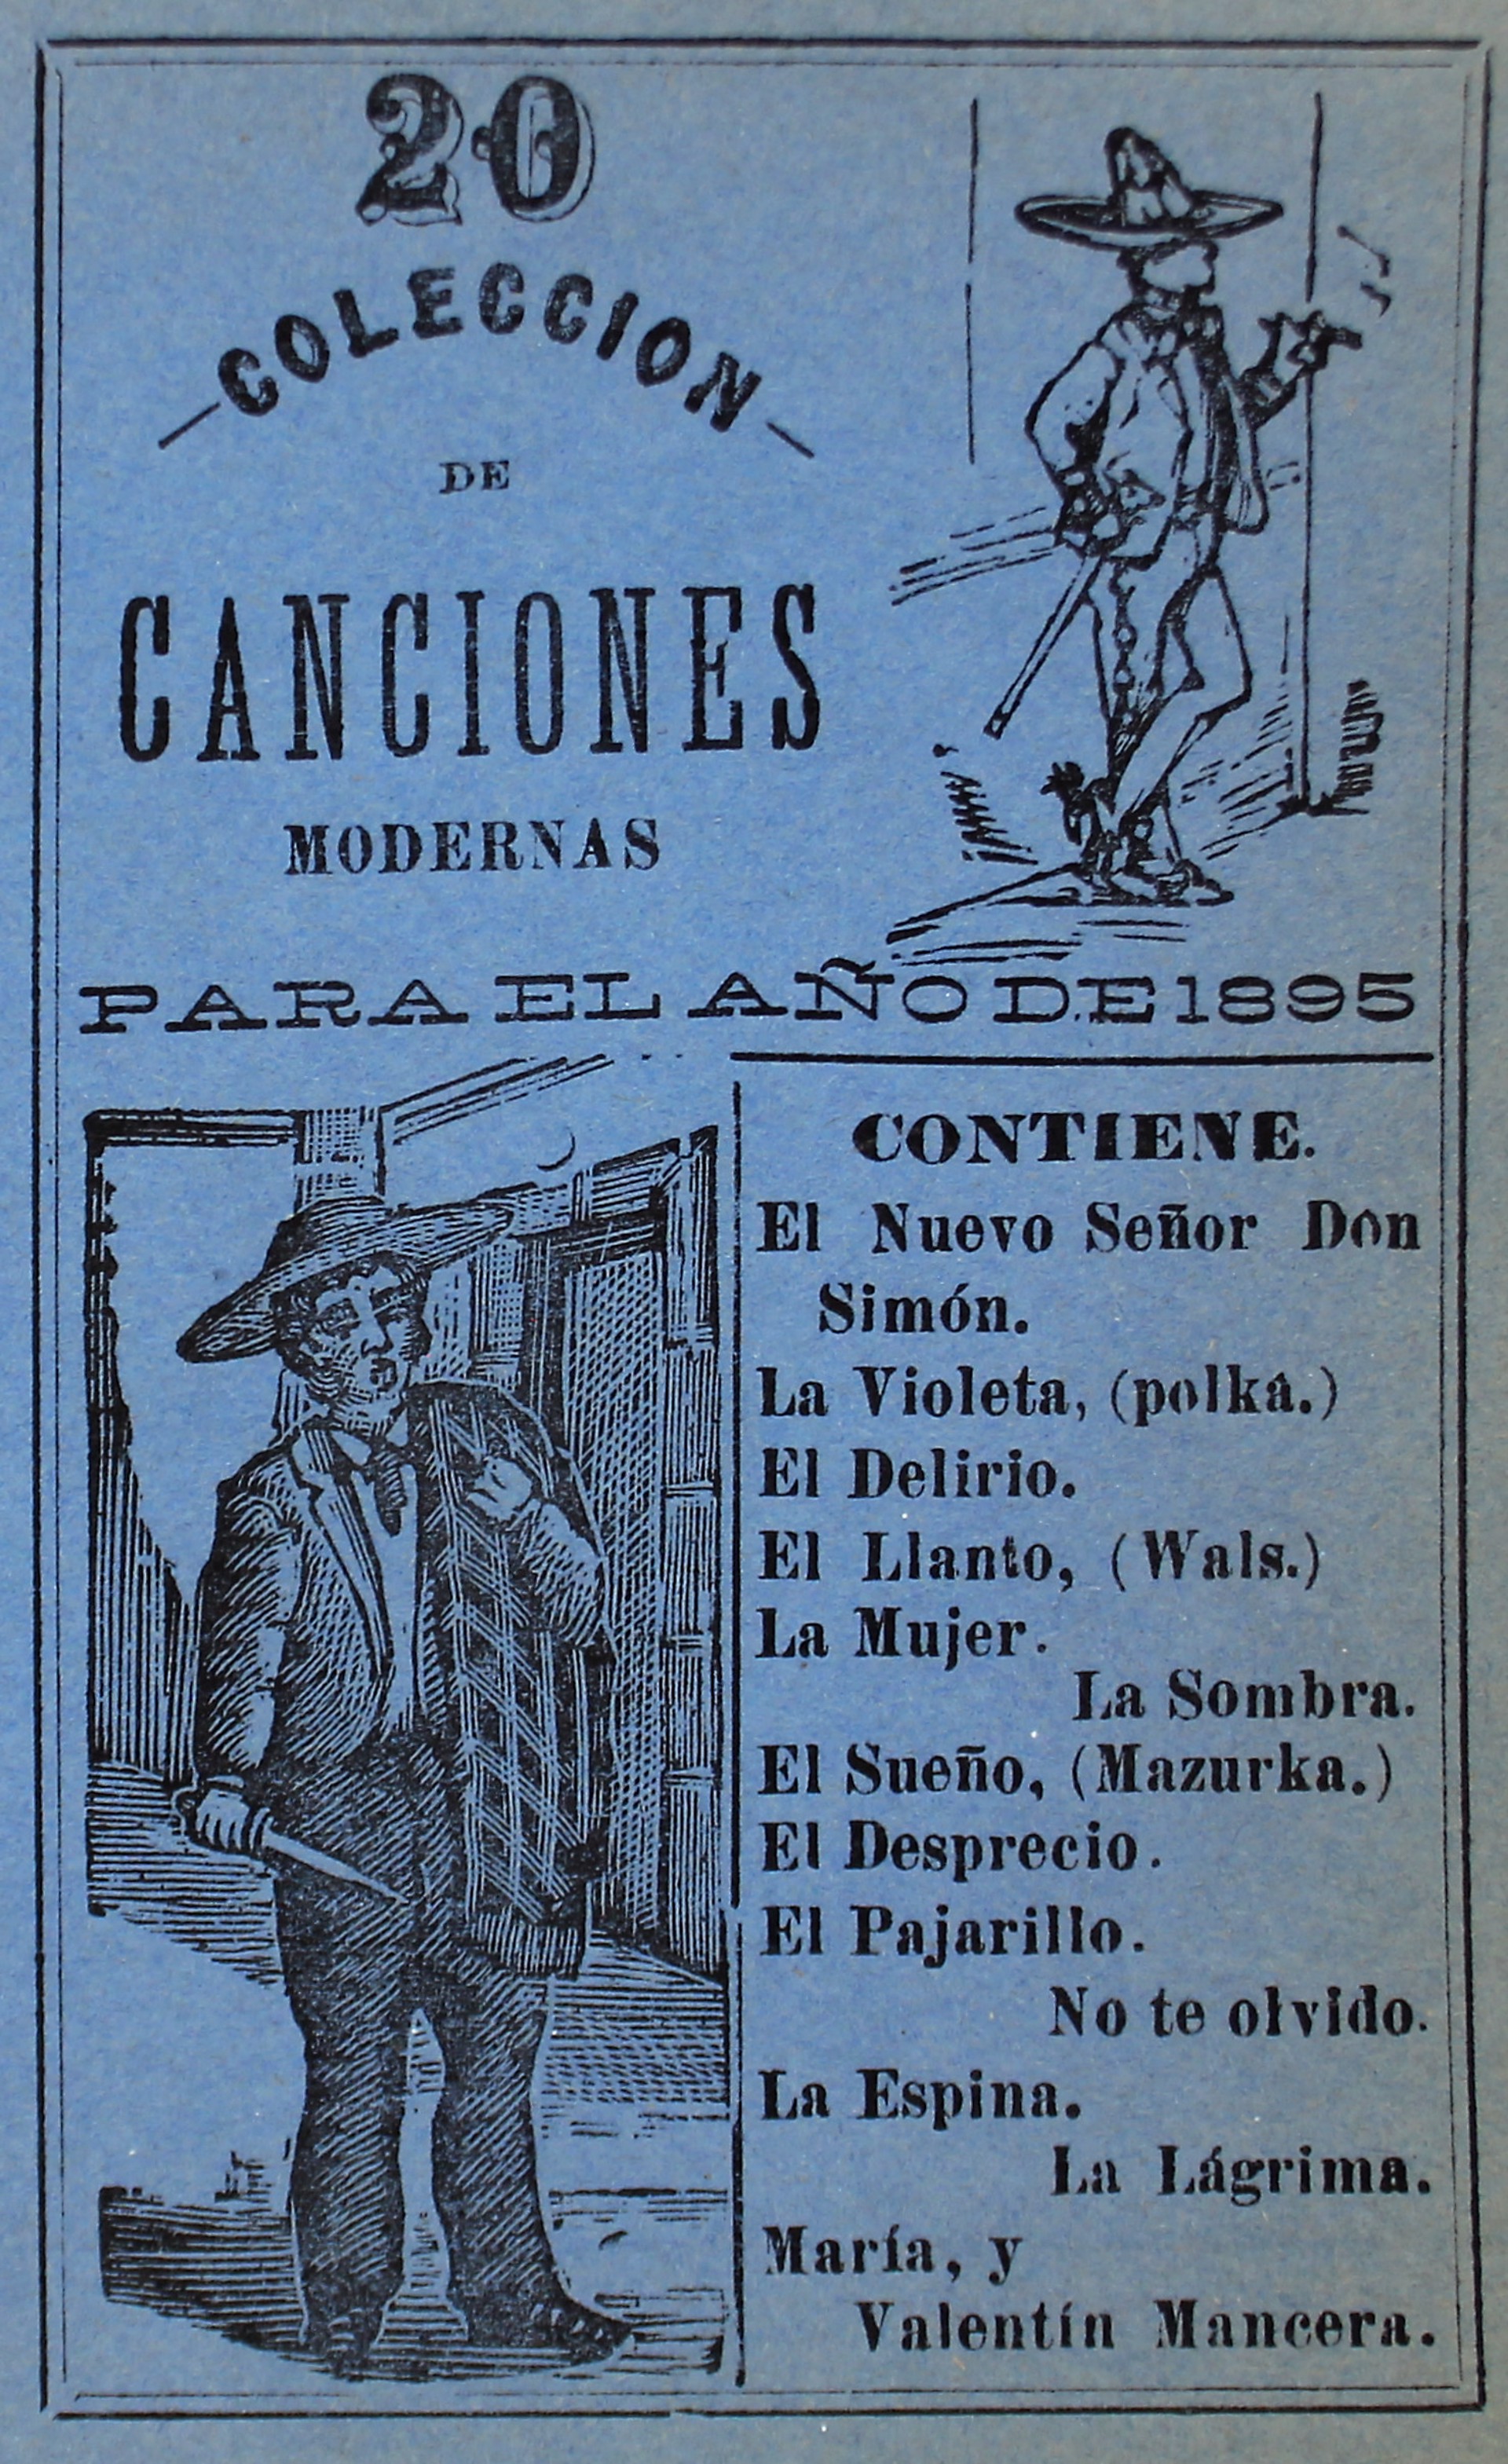 Coleccion de Canciones Modernas, No. 20 by José Guadalupe Posada